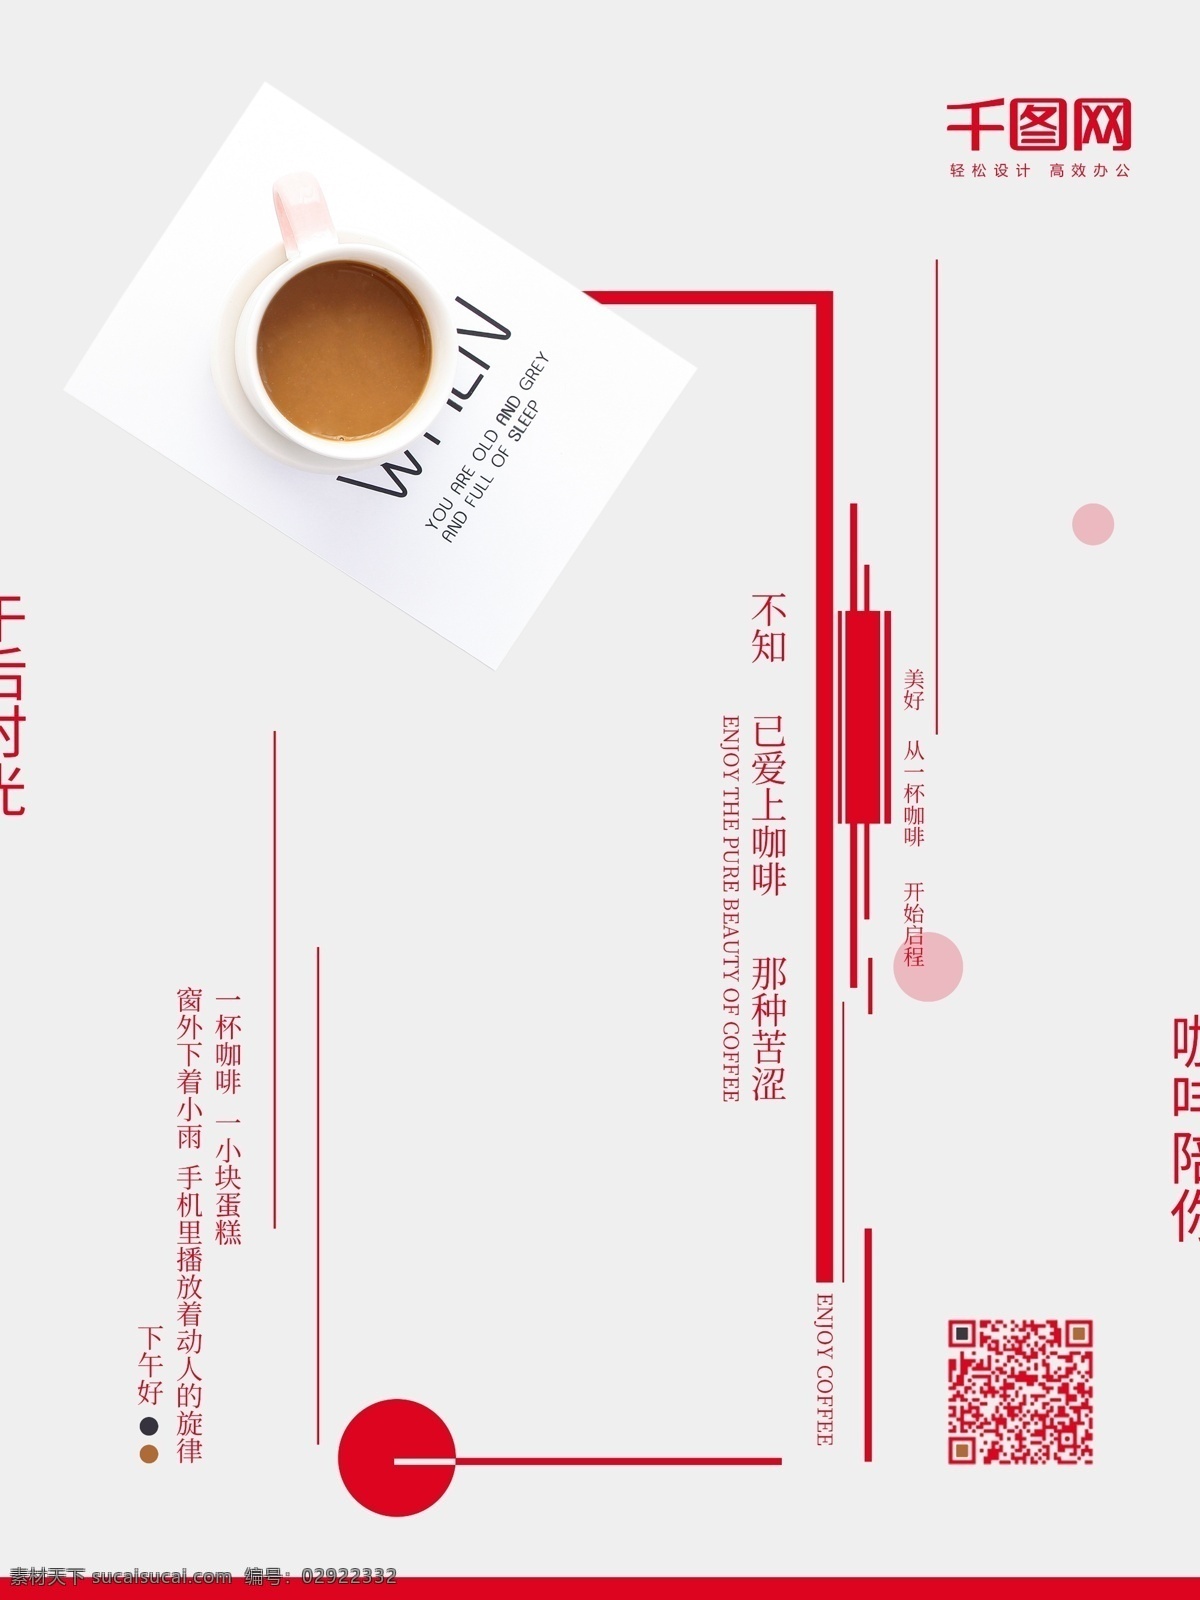 午后 咖啡 中国 风 海报 小清新 中国风 咖啡海报 午后时光 中国风海报 美食海报 美食